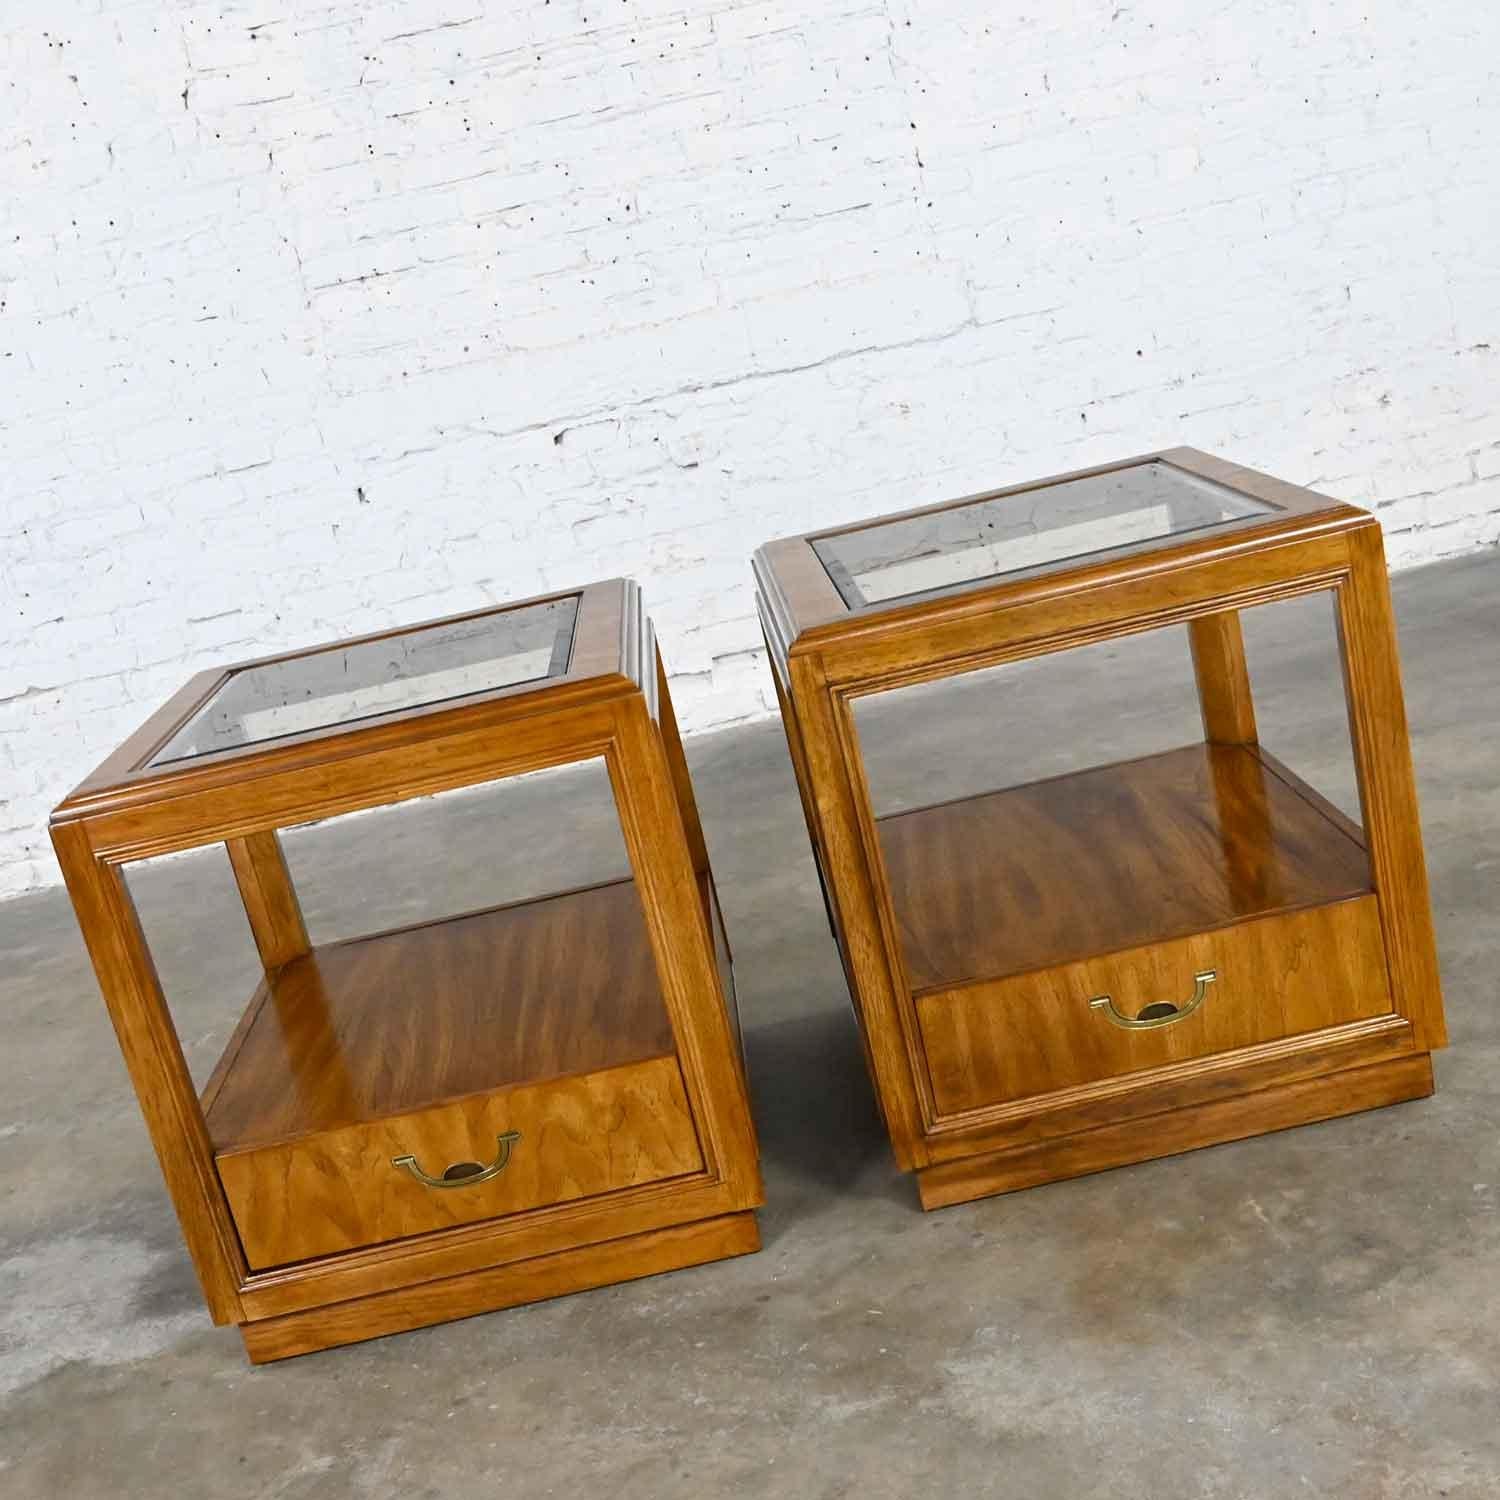 Magnifique table d'appoint rectangulaire en bois de style campagne de la collection Accolade II de Drexel, avec un seul tiroir, des ferrures en laiton et des inserts en verre biseauté. Belle condition, en gardant à l'esprit qu'il s'agit d'un produit